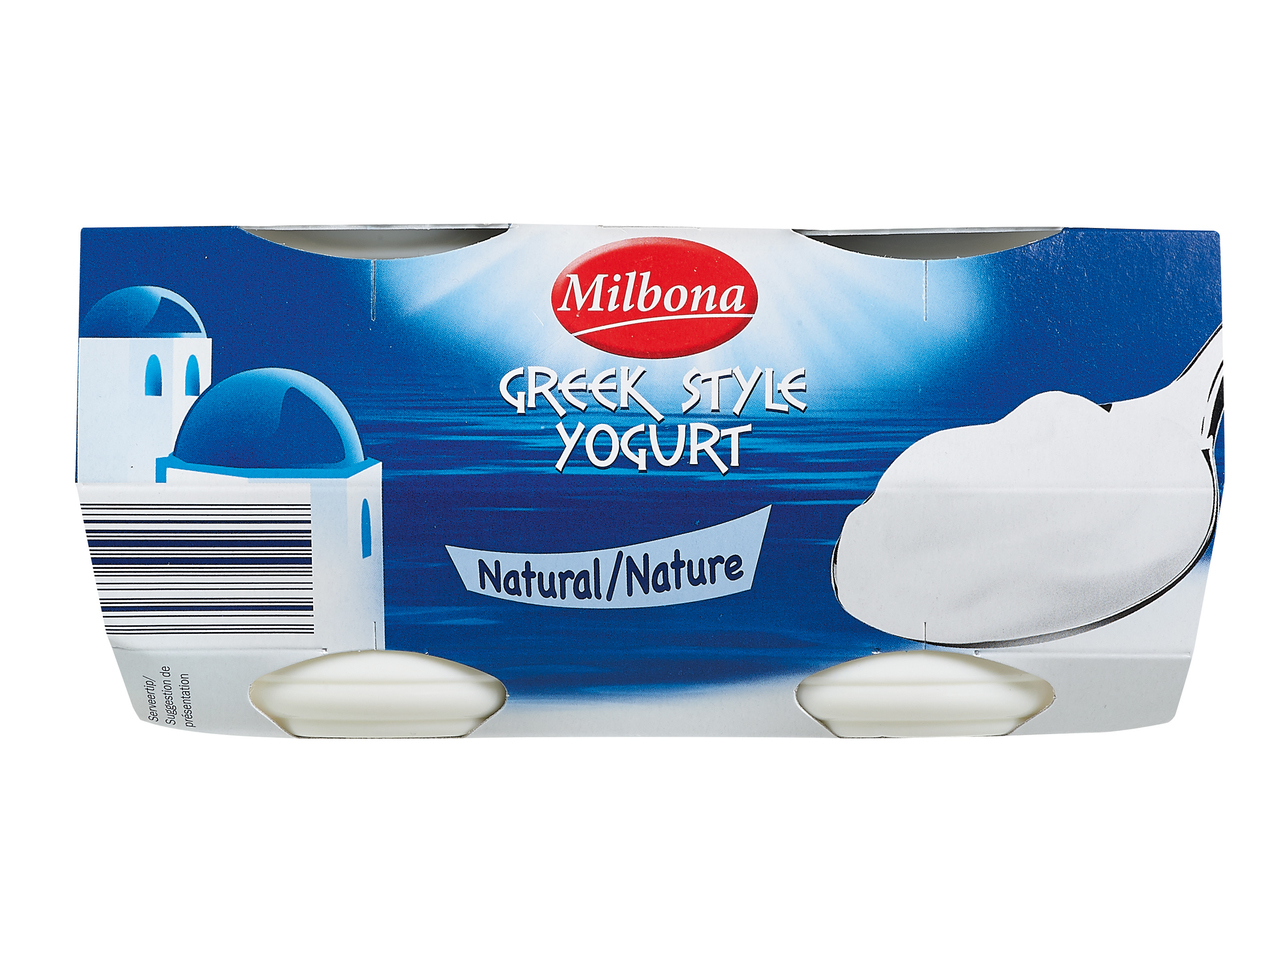 Yoghurt op Griekse wijze